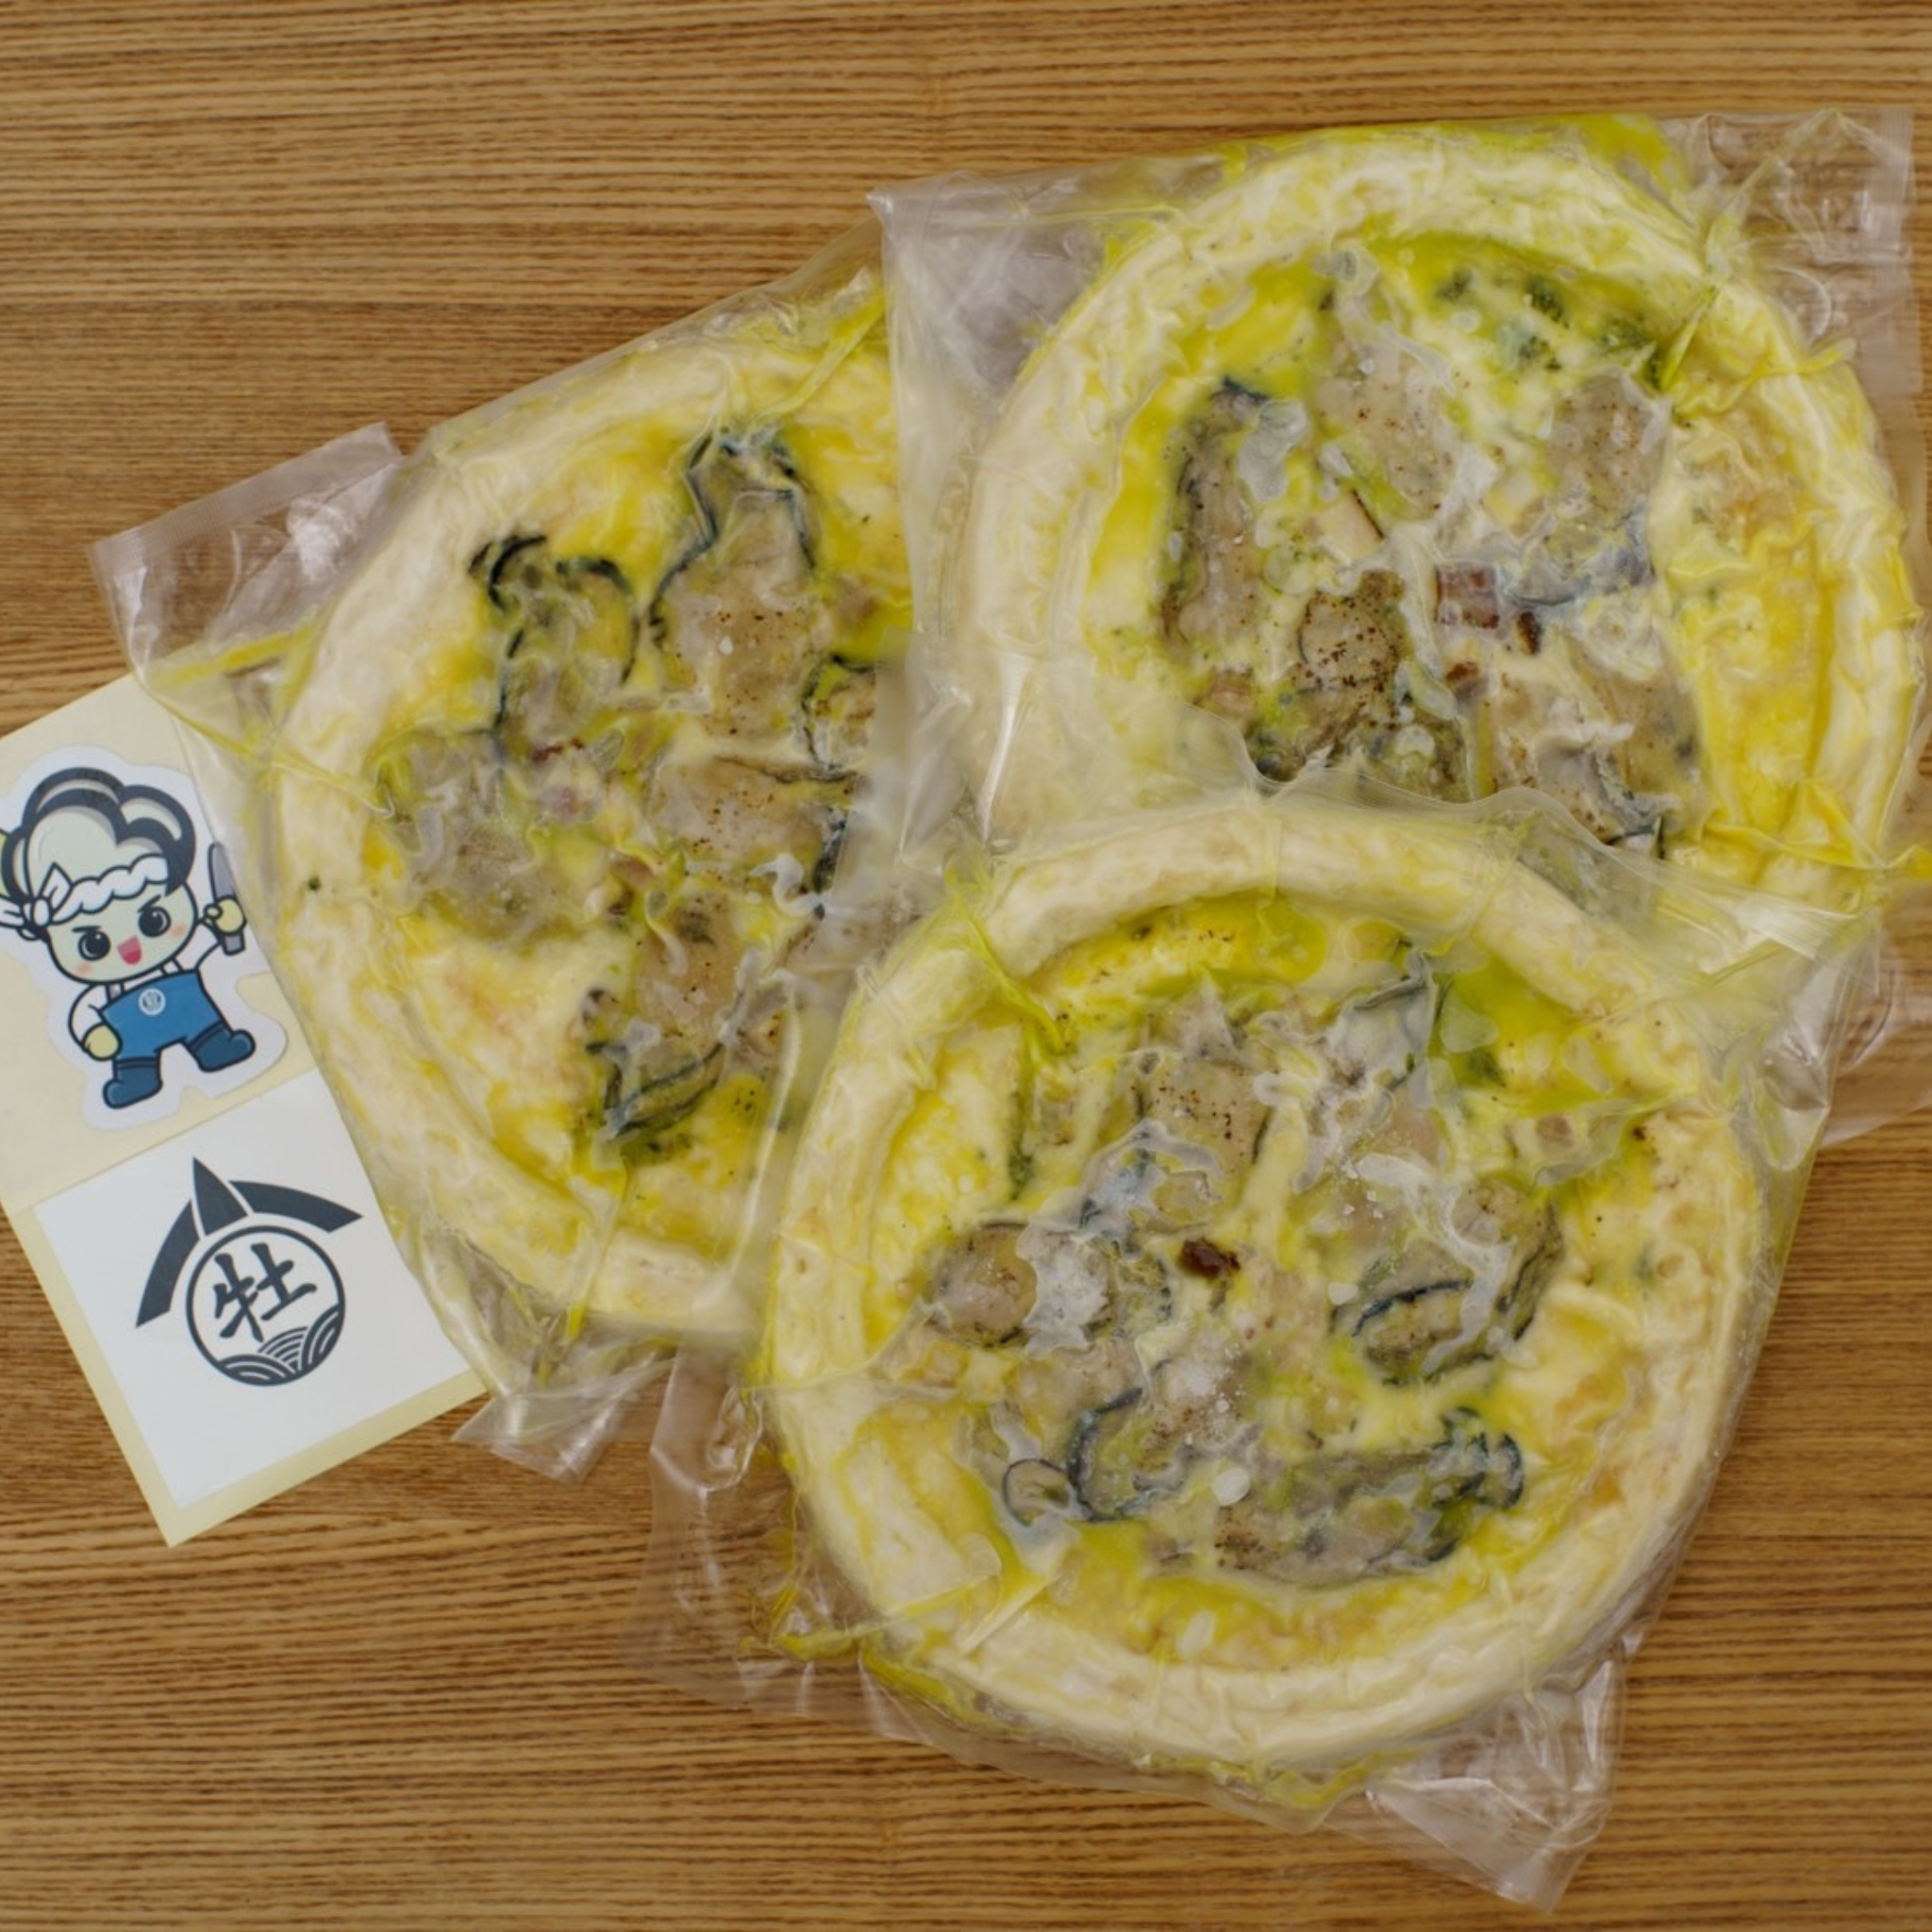 広島直送 大きな身がたっぷり入った牡蠣ピザ(3枚入り)